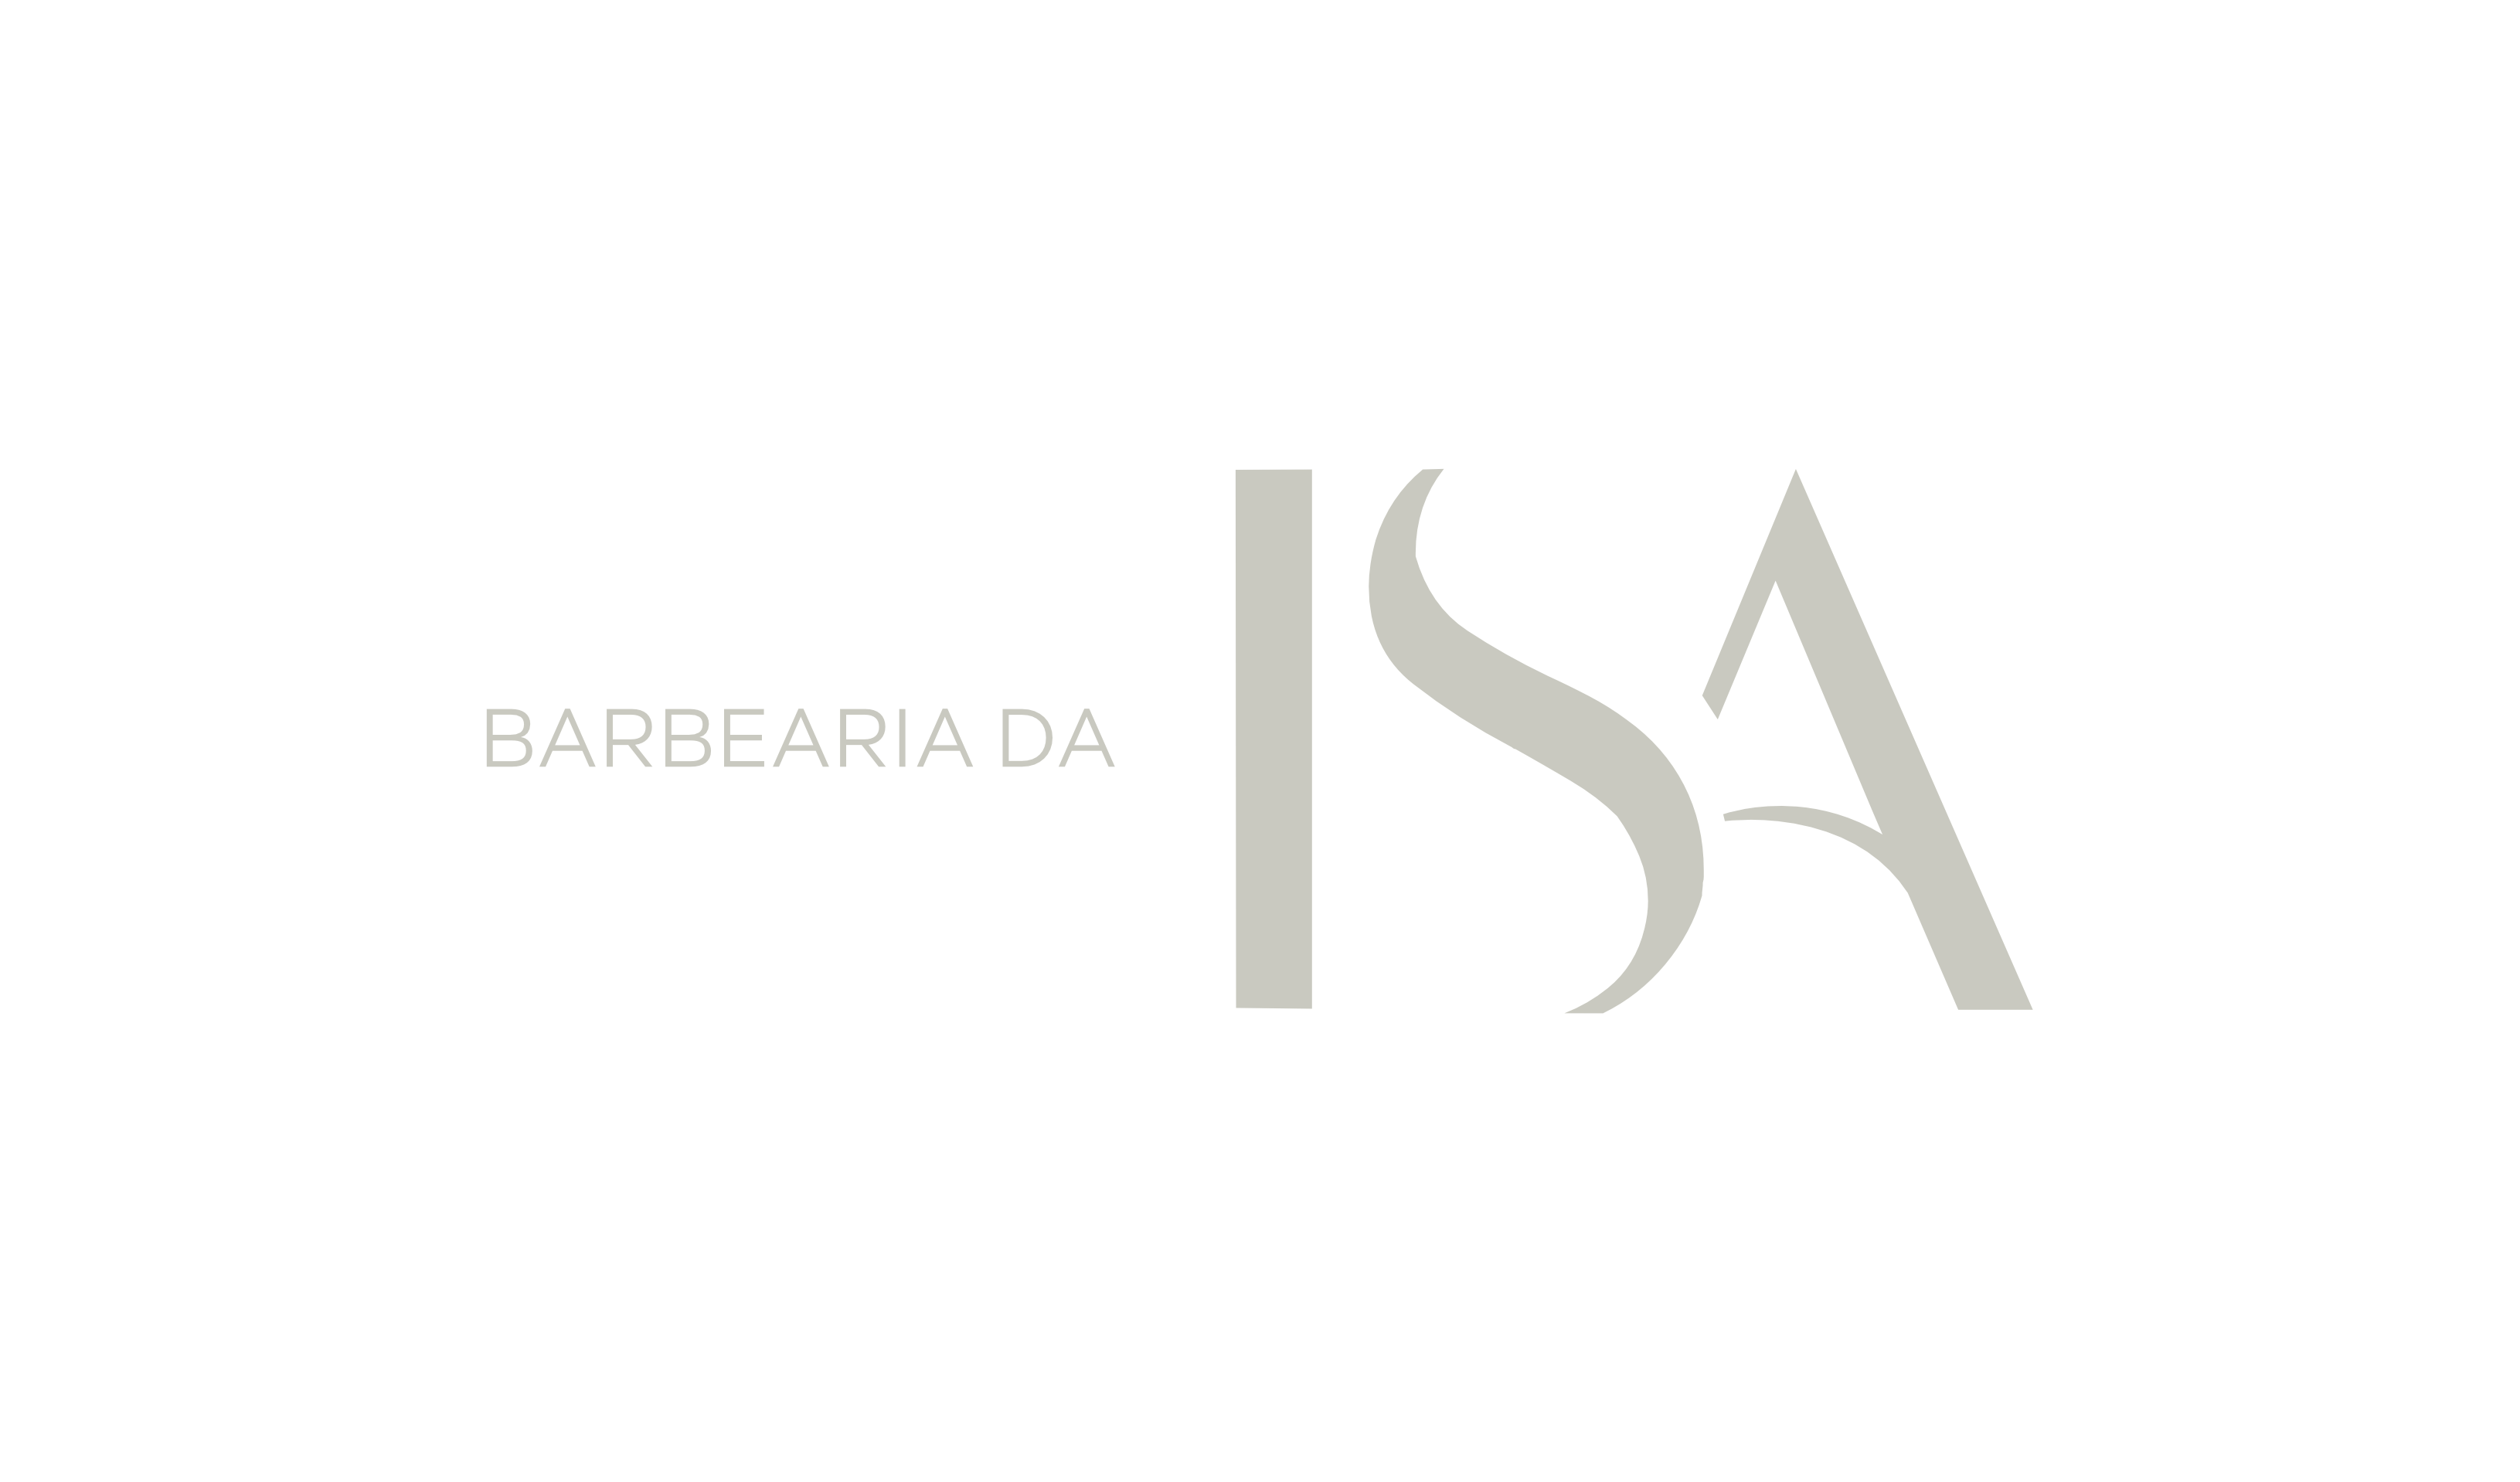 Barbearia-da-Isa-Logo-Principal-Sem-Fundo-4.png